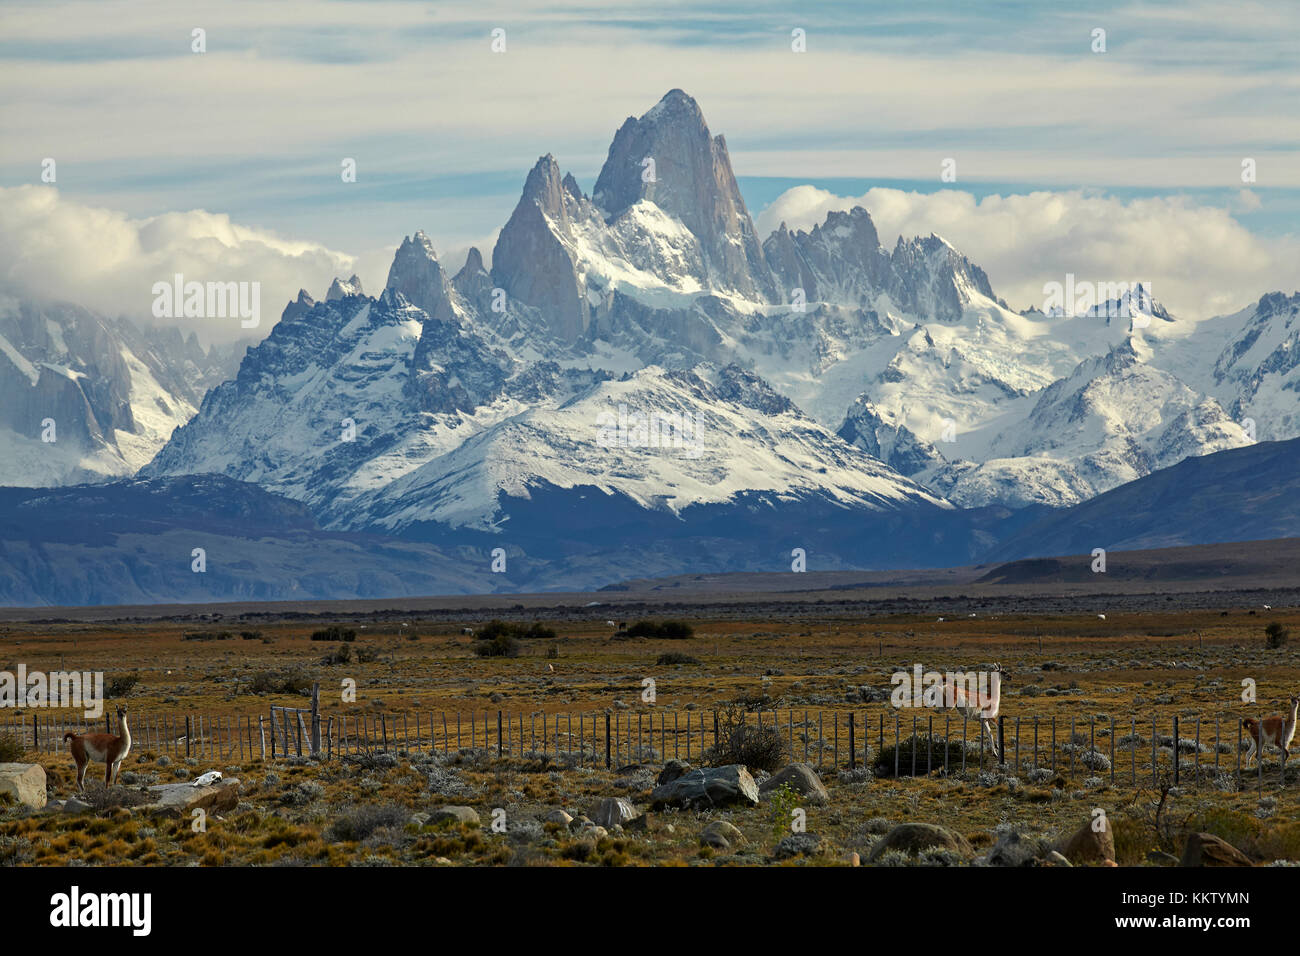 Mount Fitz Roy, Parque Nacional Los Glaciares (Welterbe) und Guanacos Sprungzaun, Patagonien, Argentinien, Südamerika Stockfoto